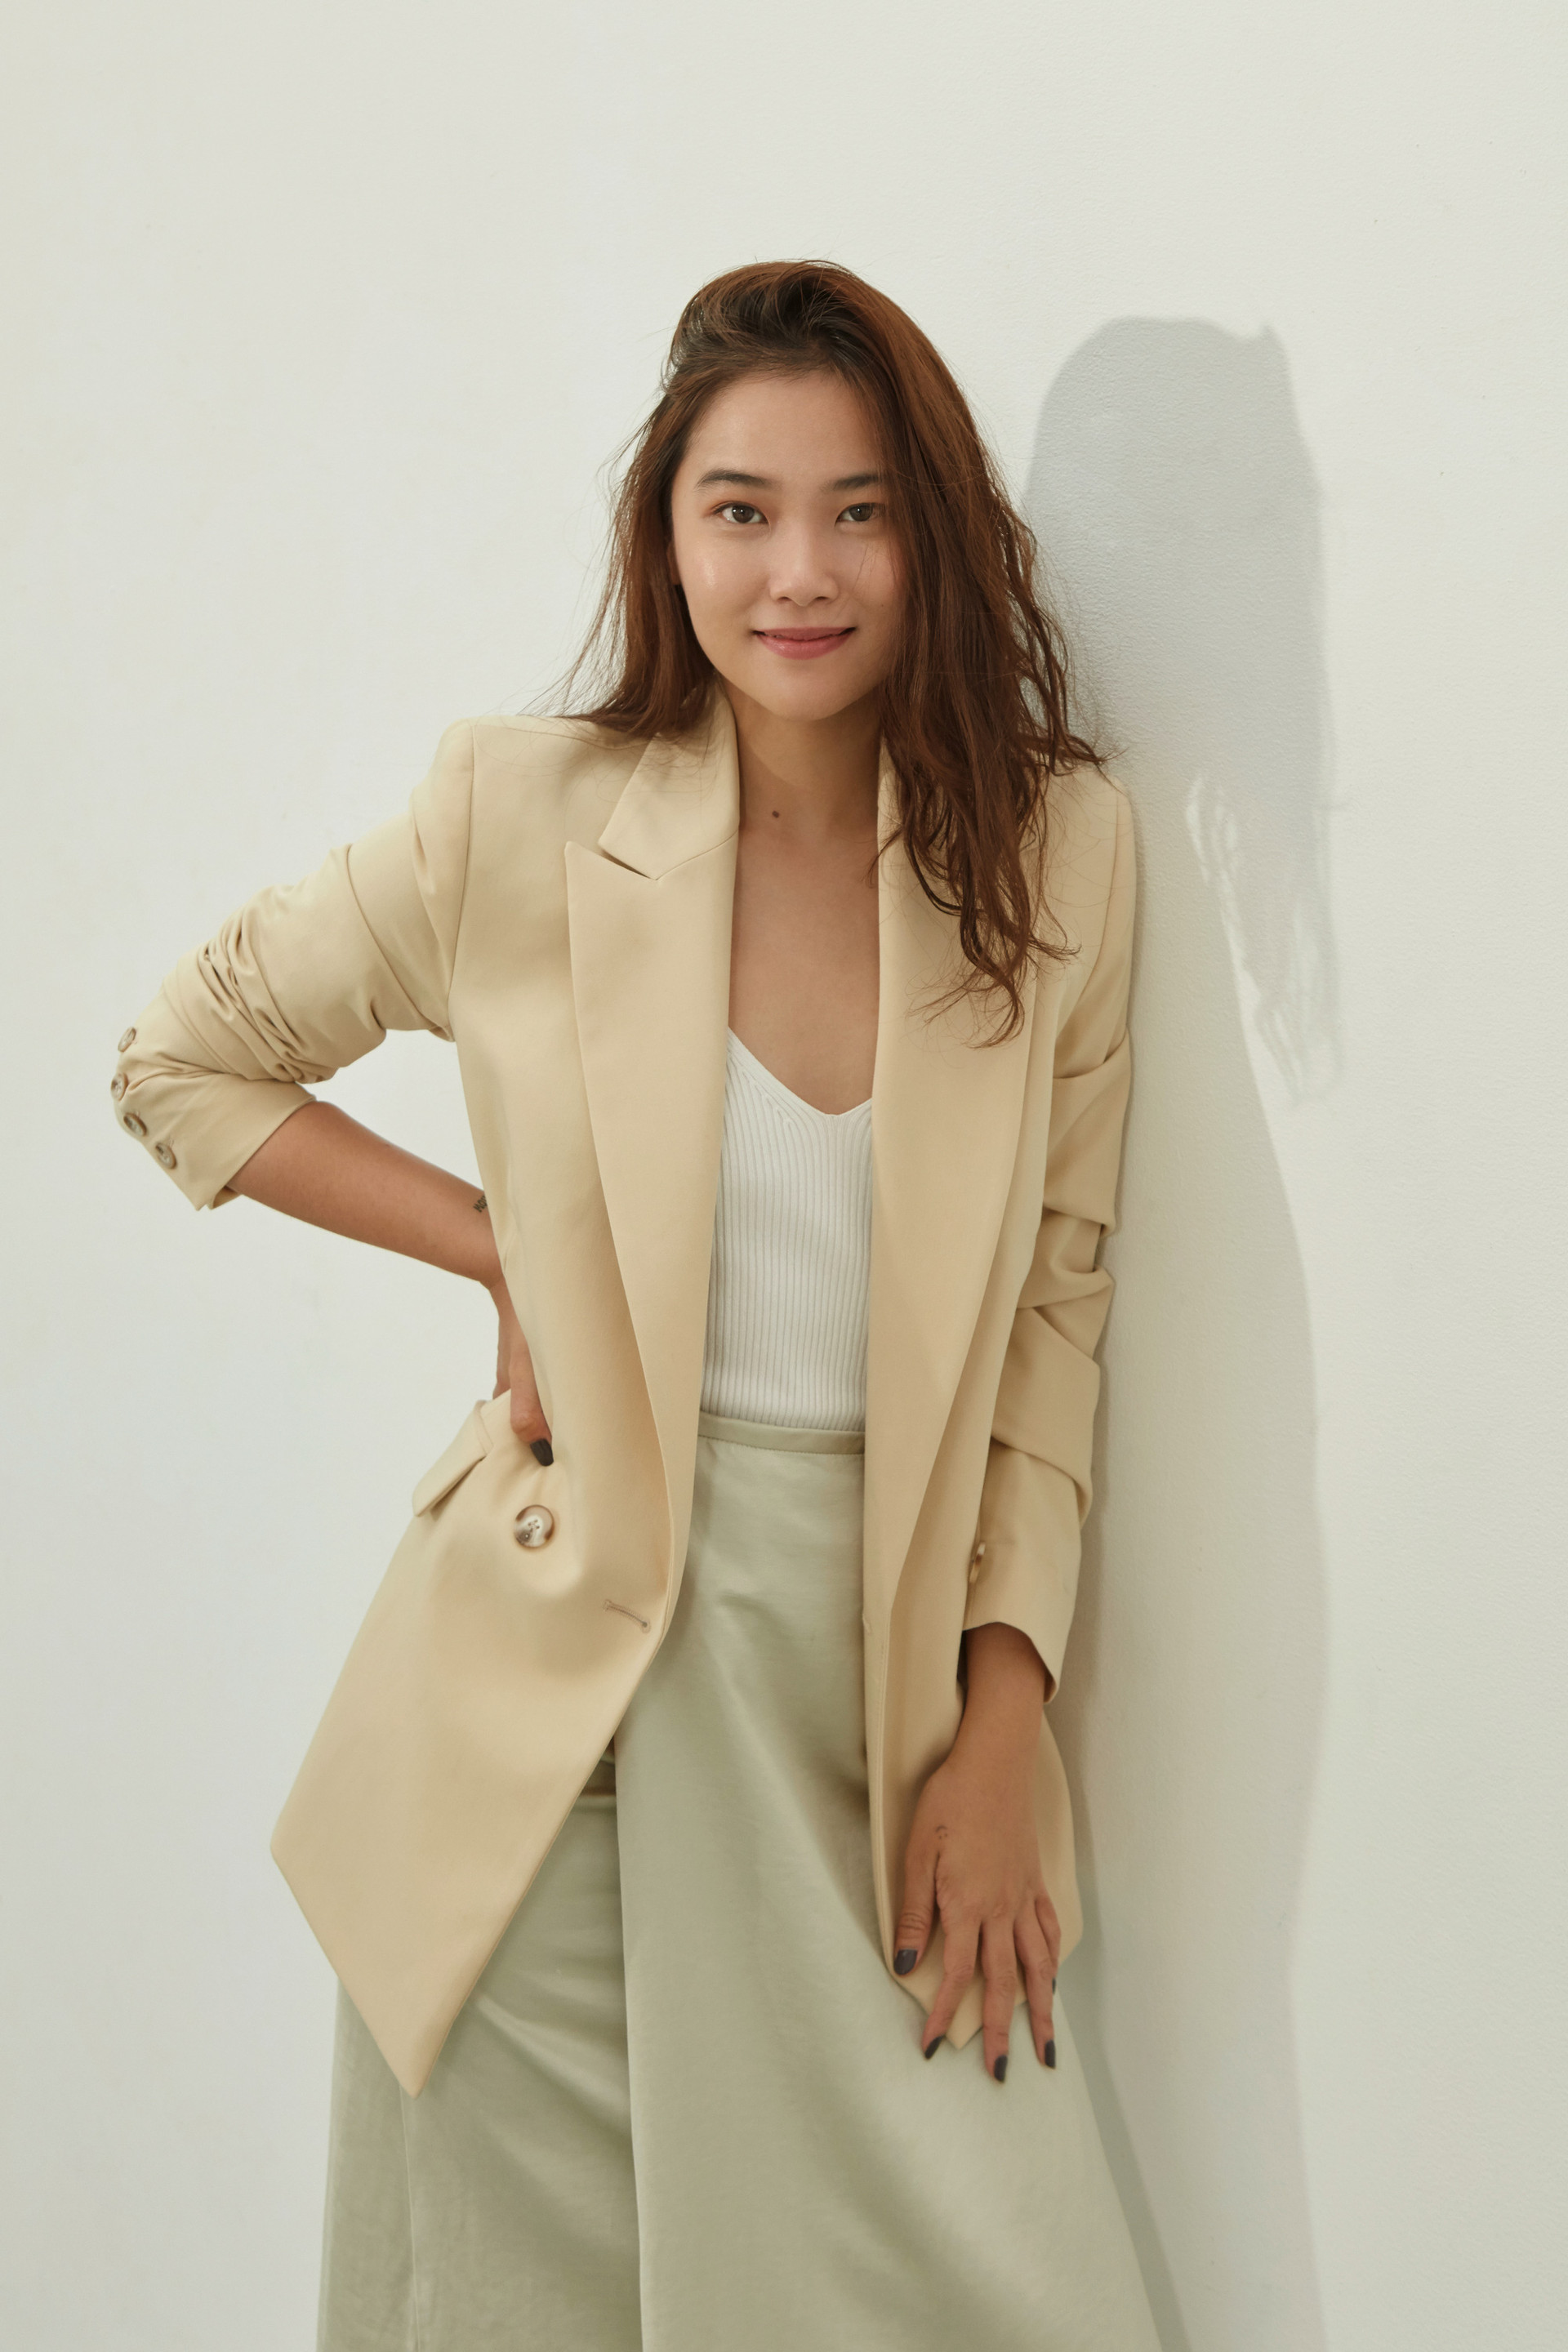 Gương mặt Forbes 30 châu Á 2020 Zean Võ: Độc thân không còn là một trạng thái để than vãn, mà là một lựa chọn của phụ nữ hiện đại - Ảnh 2.